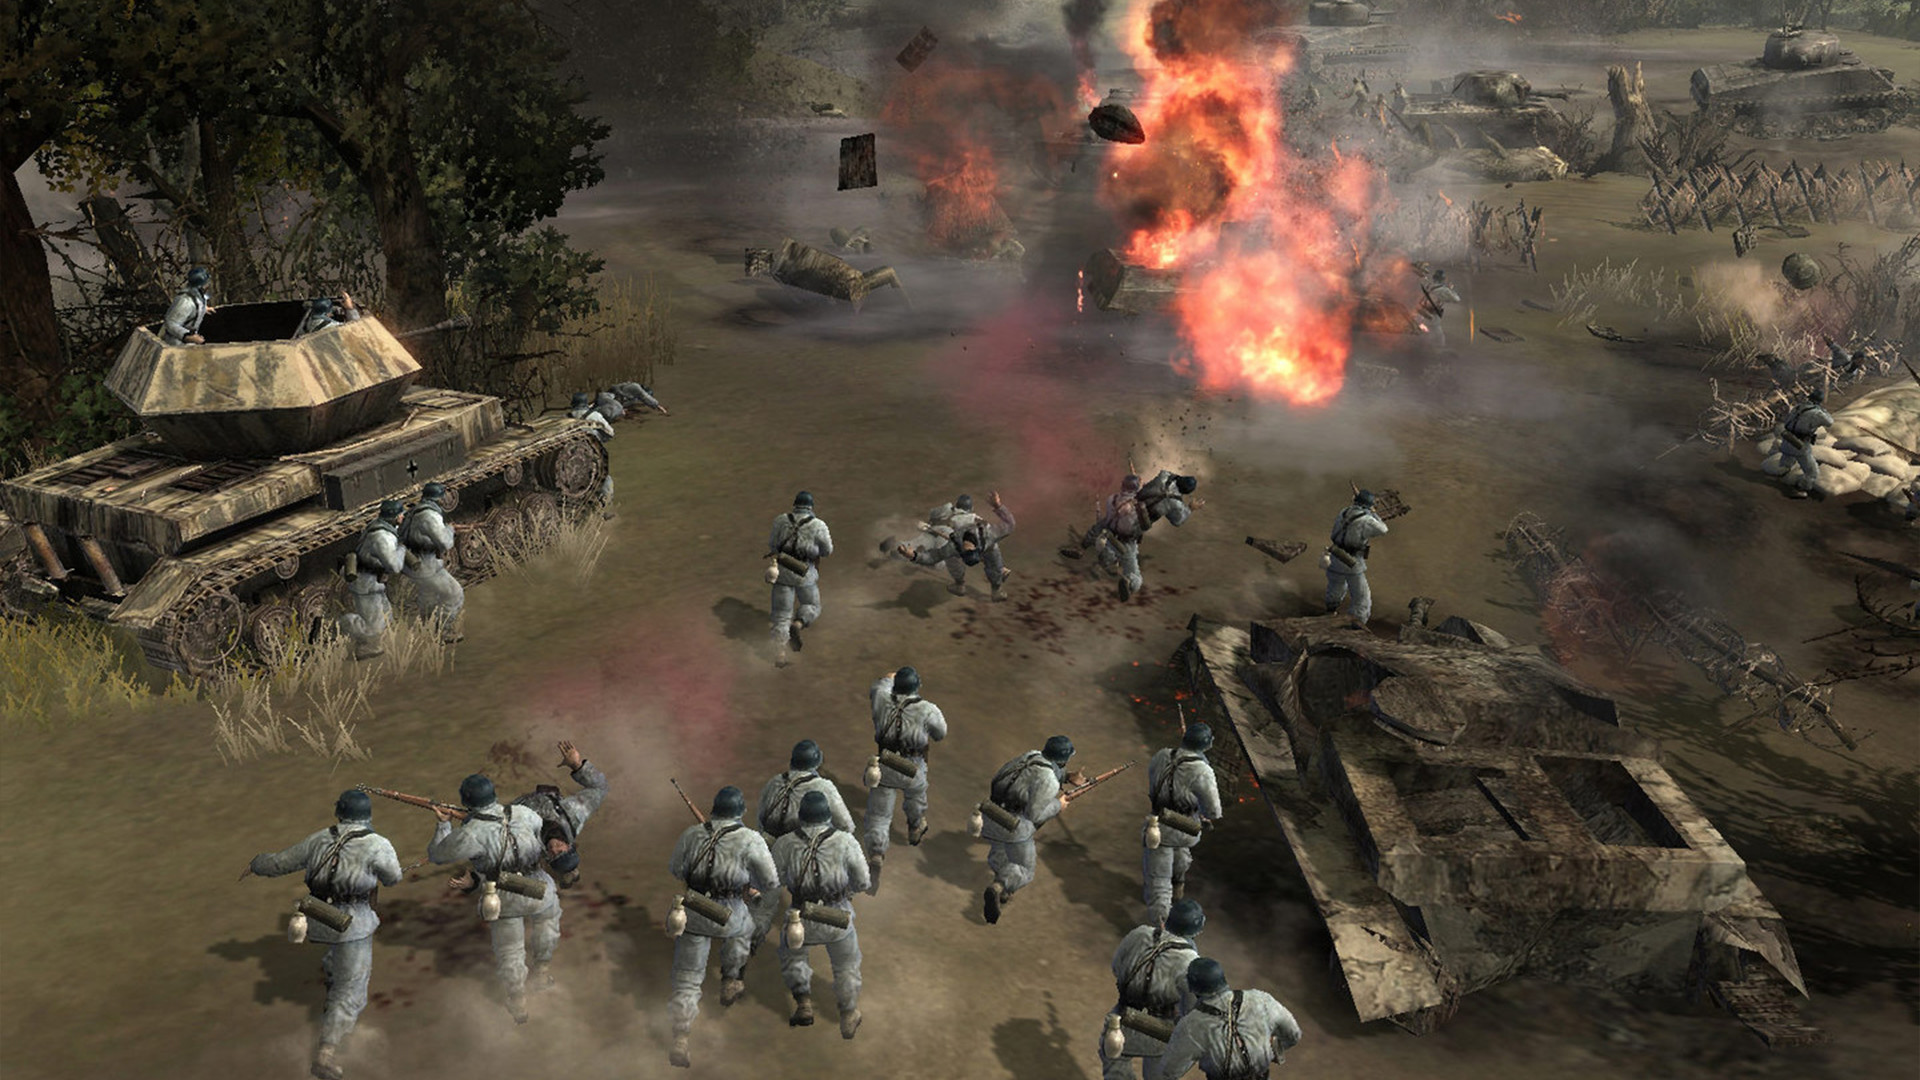 بهترین بازی های جنگی موبایل: شرکت قهرمانان. تصویر گروهی از سربازان را نشان می دهد که به هیچ وجه سوار می شوند